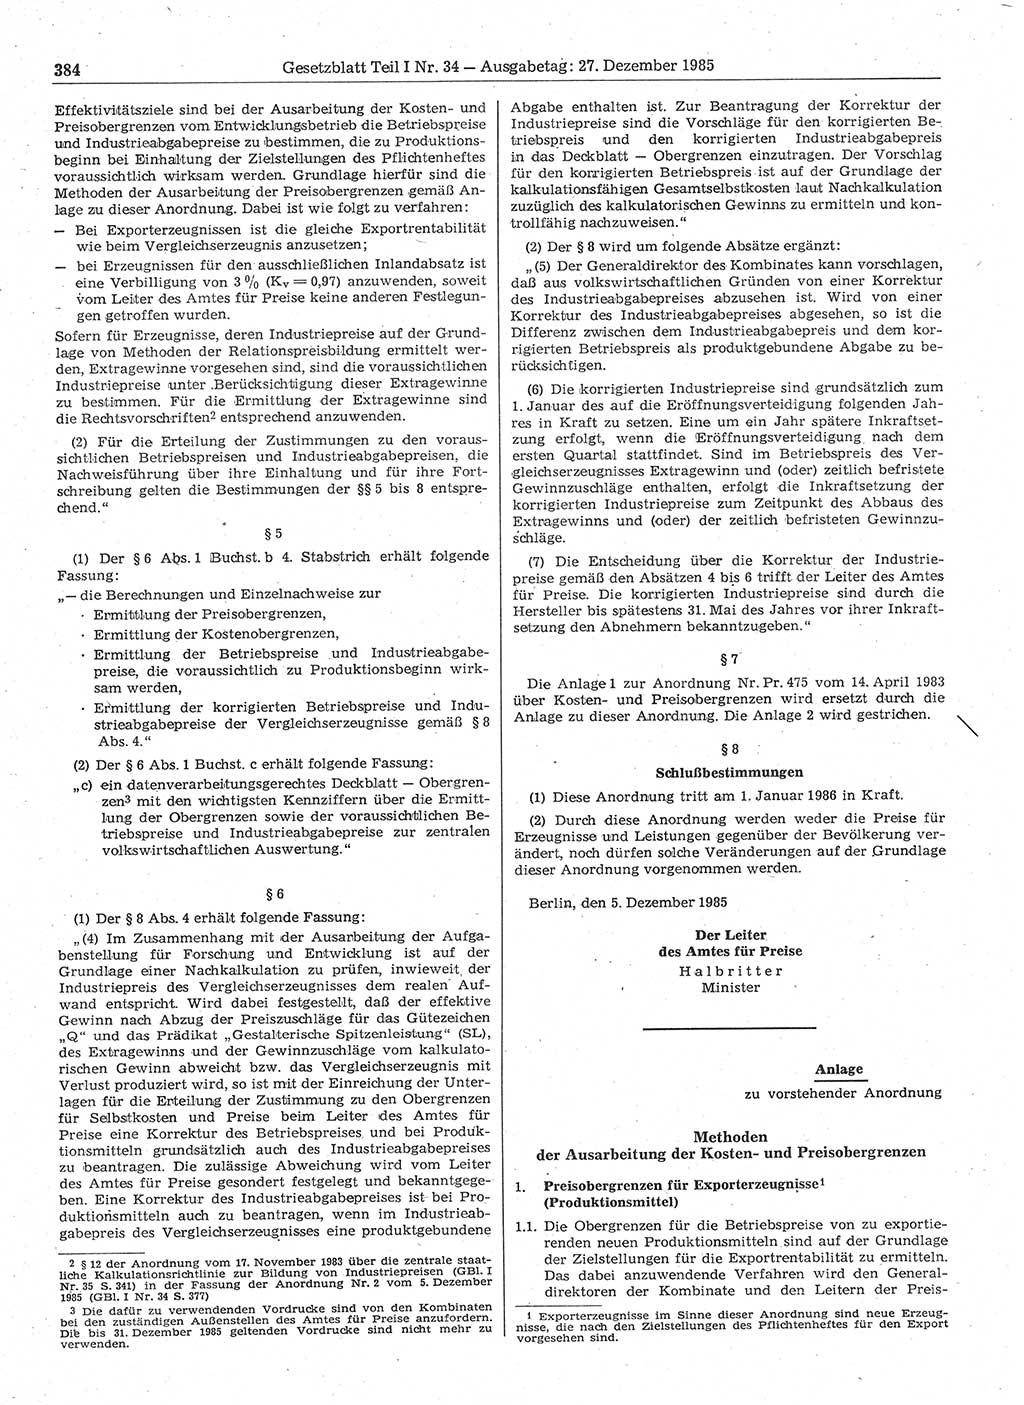 Gesetzblatt (GBl.) der Deutschen Demokratischen Republik (DDR) Teil Ⅰ 1985, Seite 384 (GBl. DDR Ⅰ 1985, S. 384)